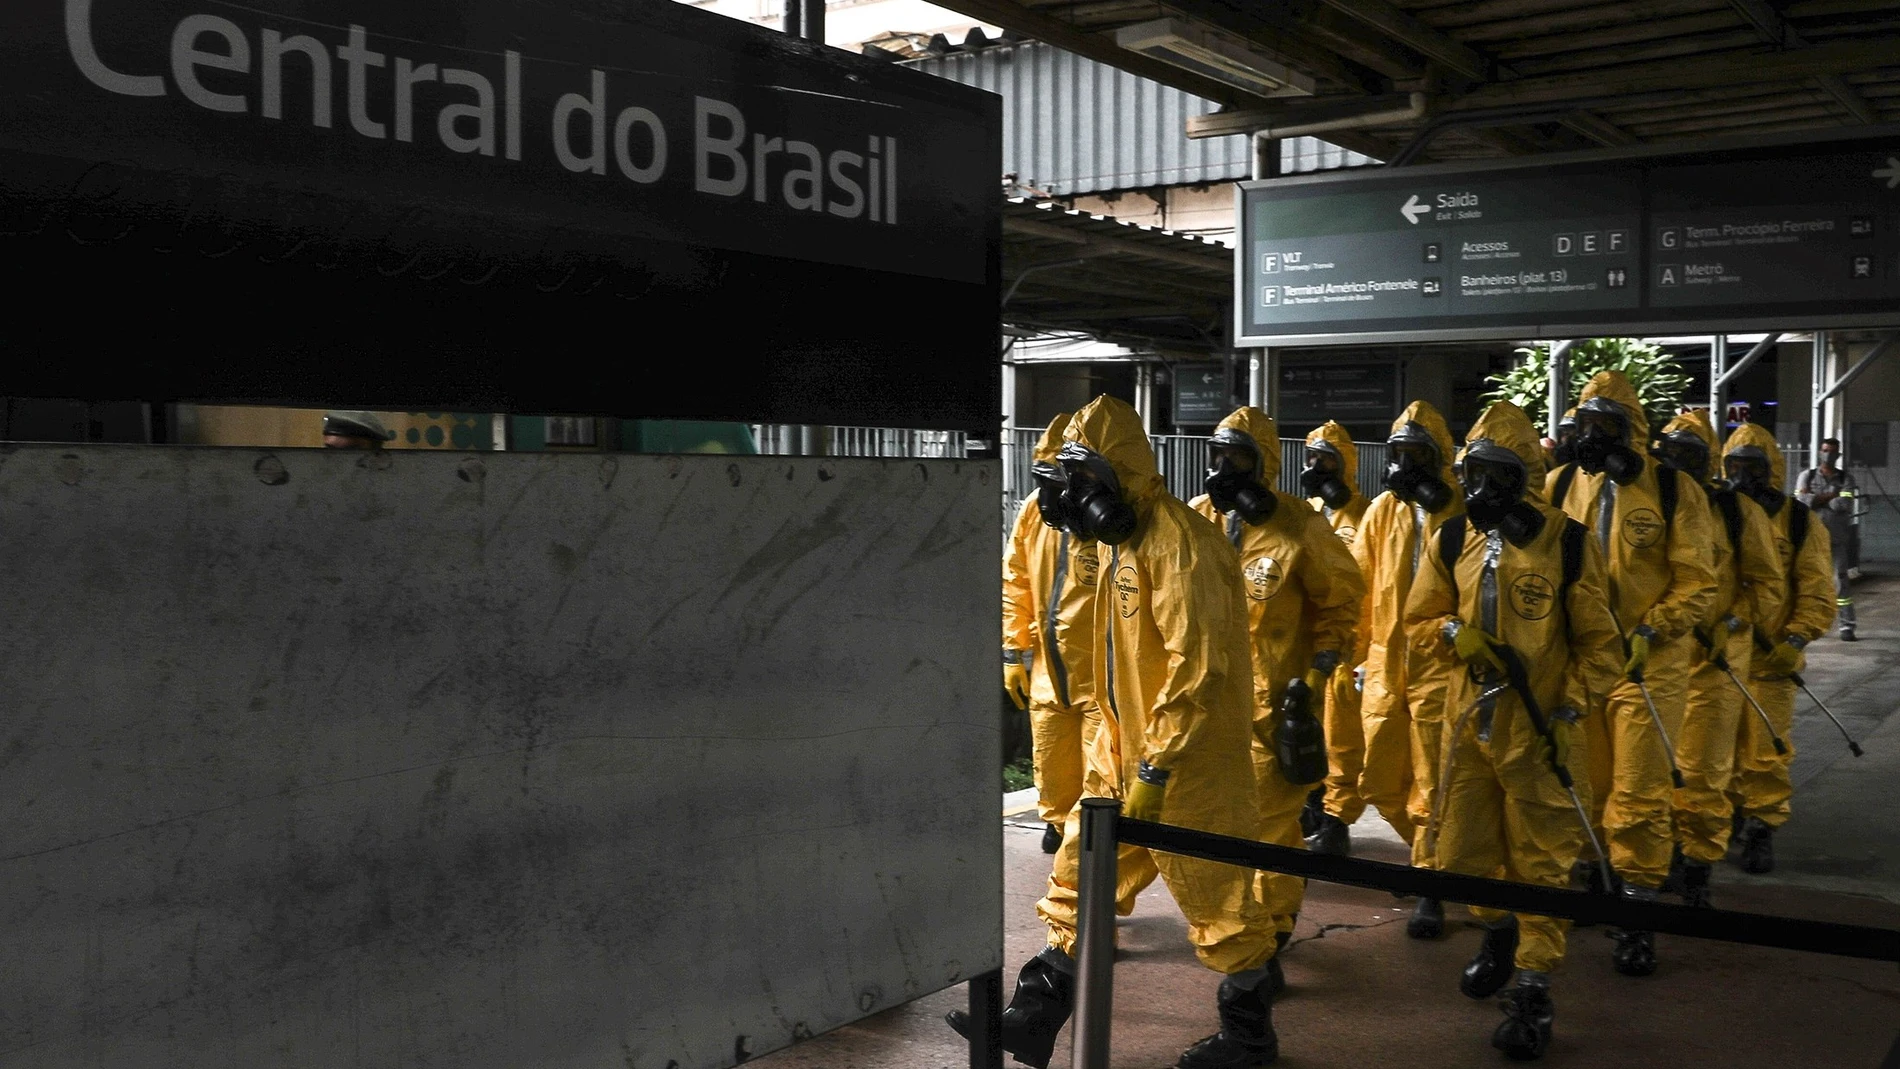 Limpieza y desinfección de trenes en Río de janeiro, por Coronavírus